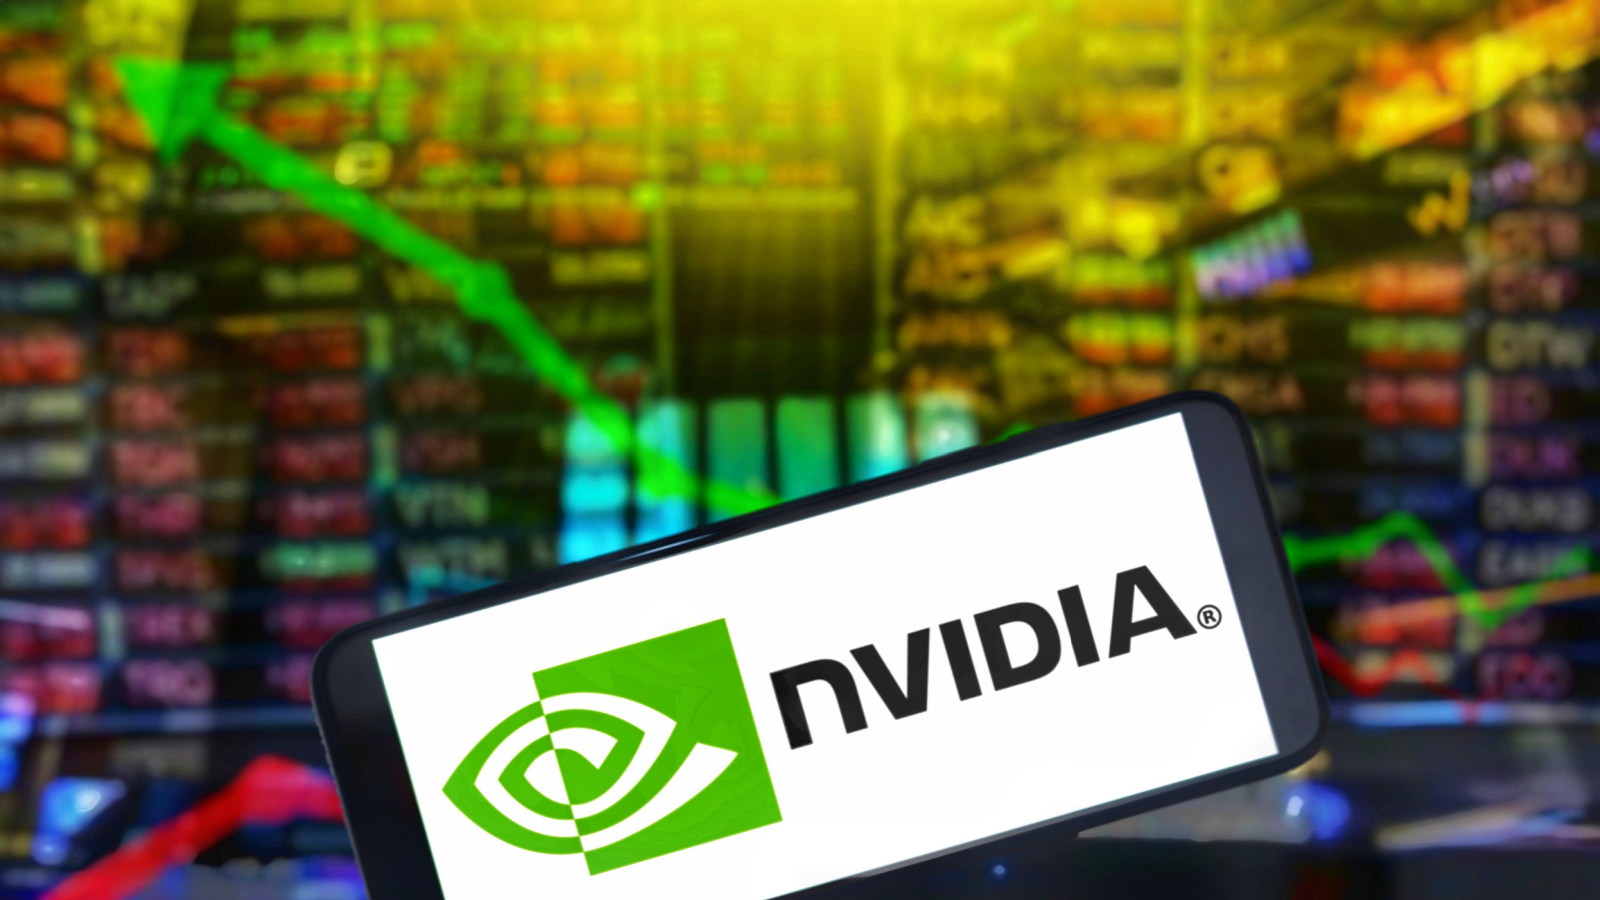 Should You Buy Nvidia (NVDA) Stock Before May 22?